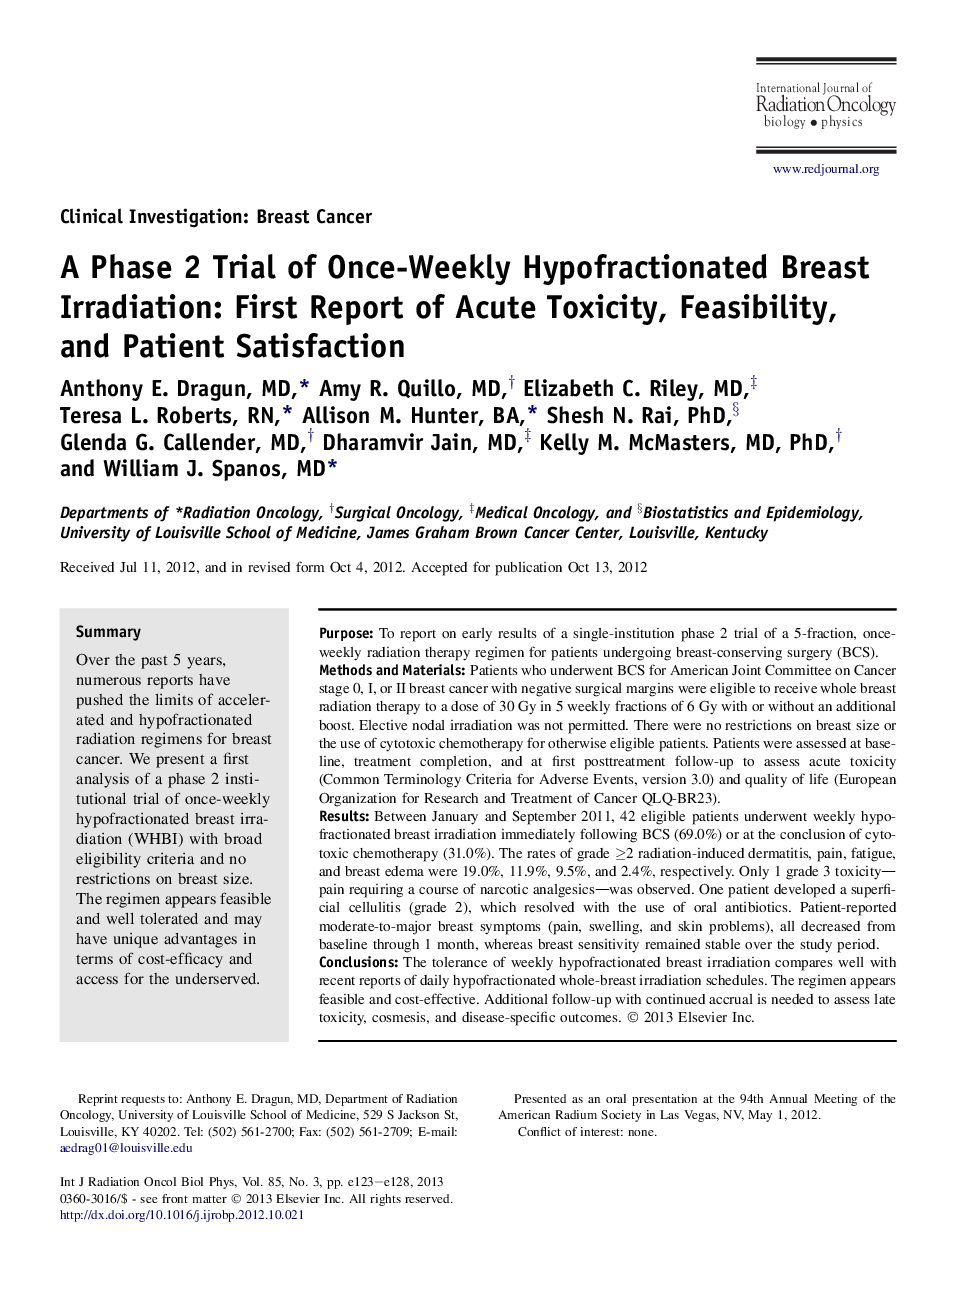 یک آزمایش فاز 2 تجدید پستان هیپوفراکسیون شده یکبارۀ هفتگی: اولین گزارش از سمیت حاد، امکان سنجی و رضایت بیمار 